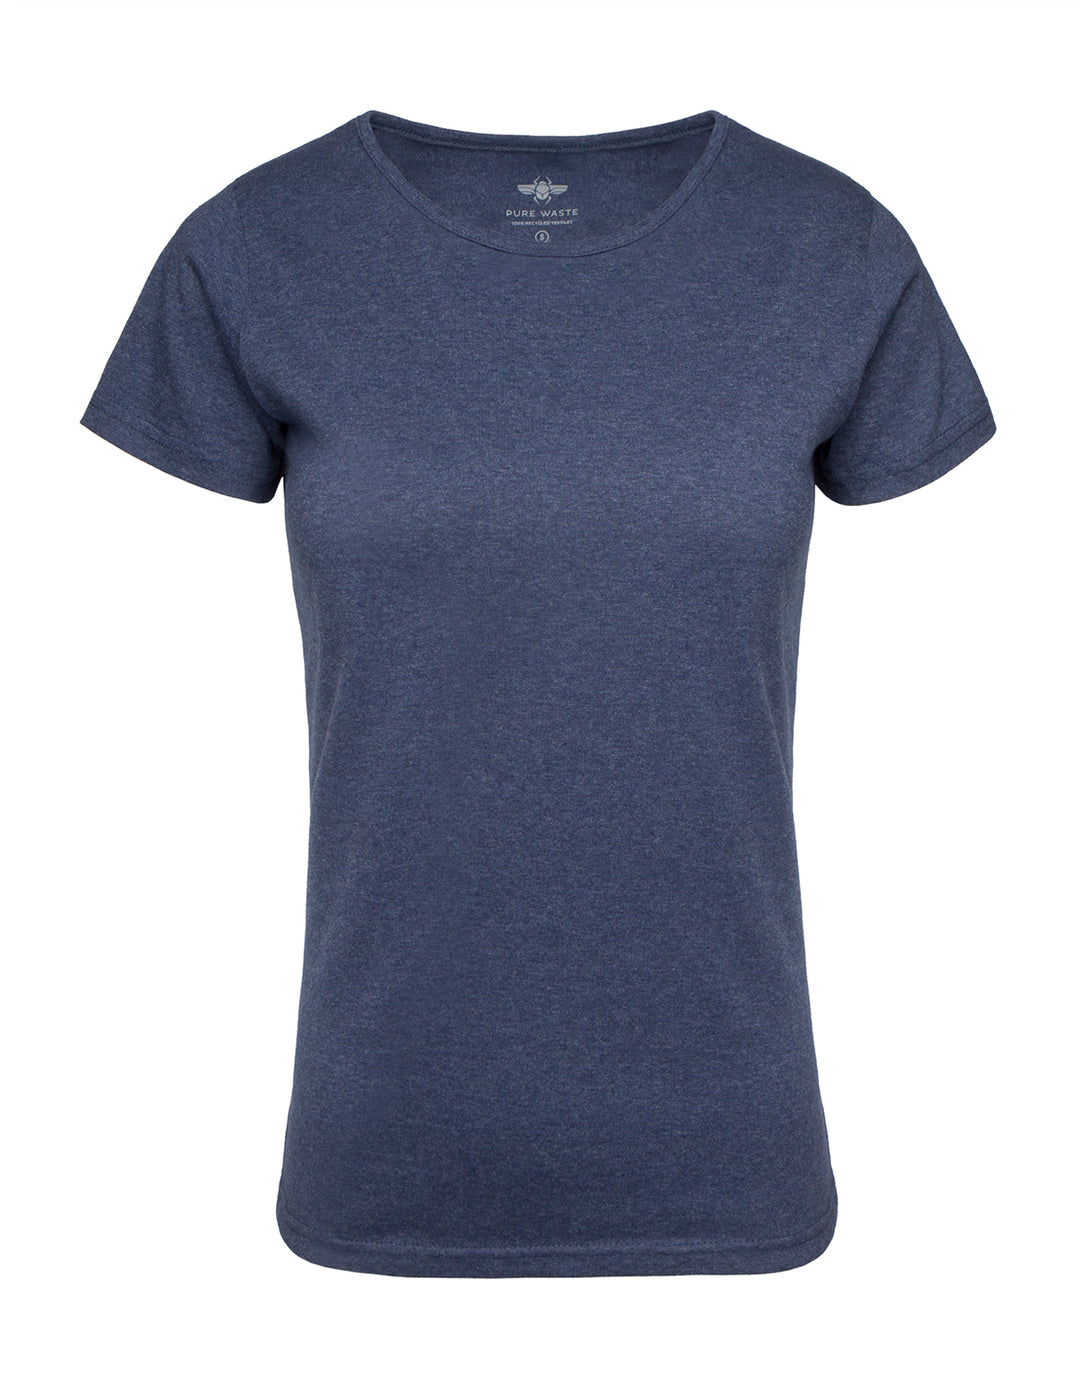 Meleeratun sininen lyhythihainen t-paita naisille pyöreällä pääntiellä. Valmistettu kierrätysmateriaalista.